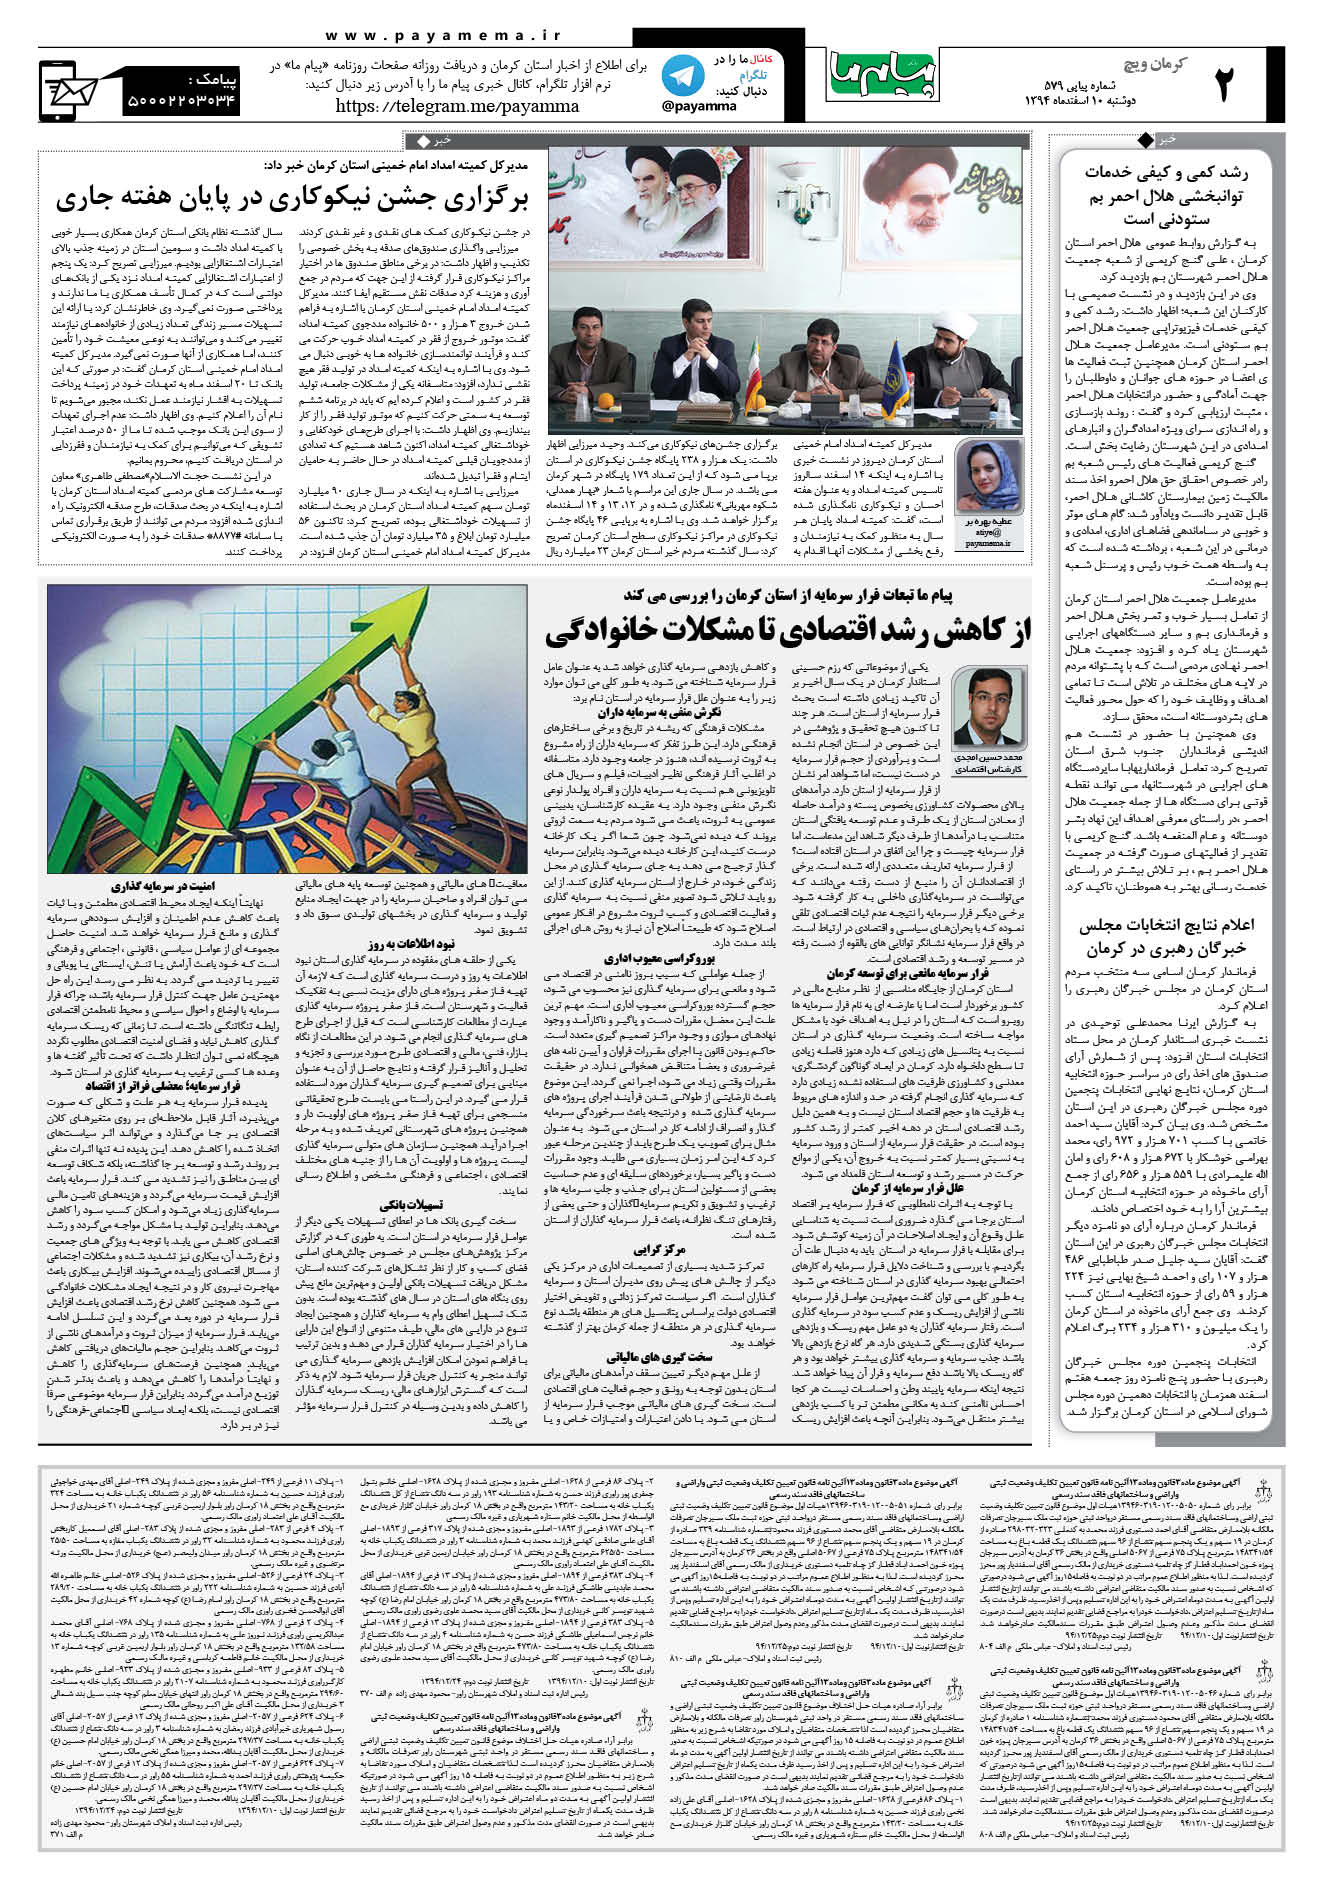 صفحه کرمان ویج شماره 579 روزنامه پیام ما